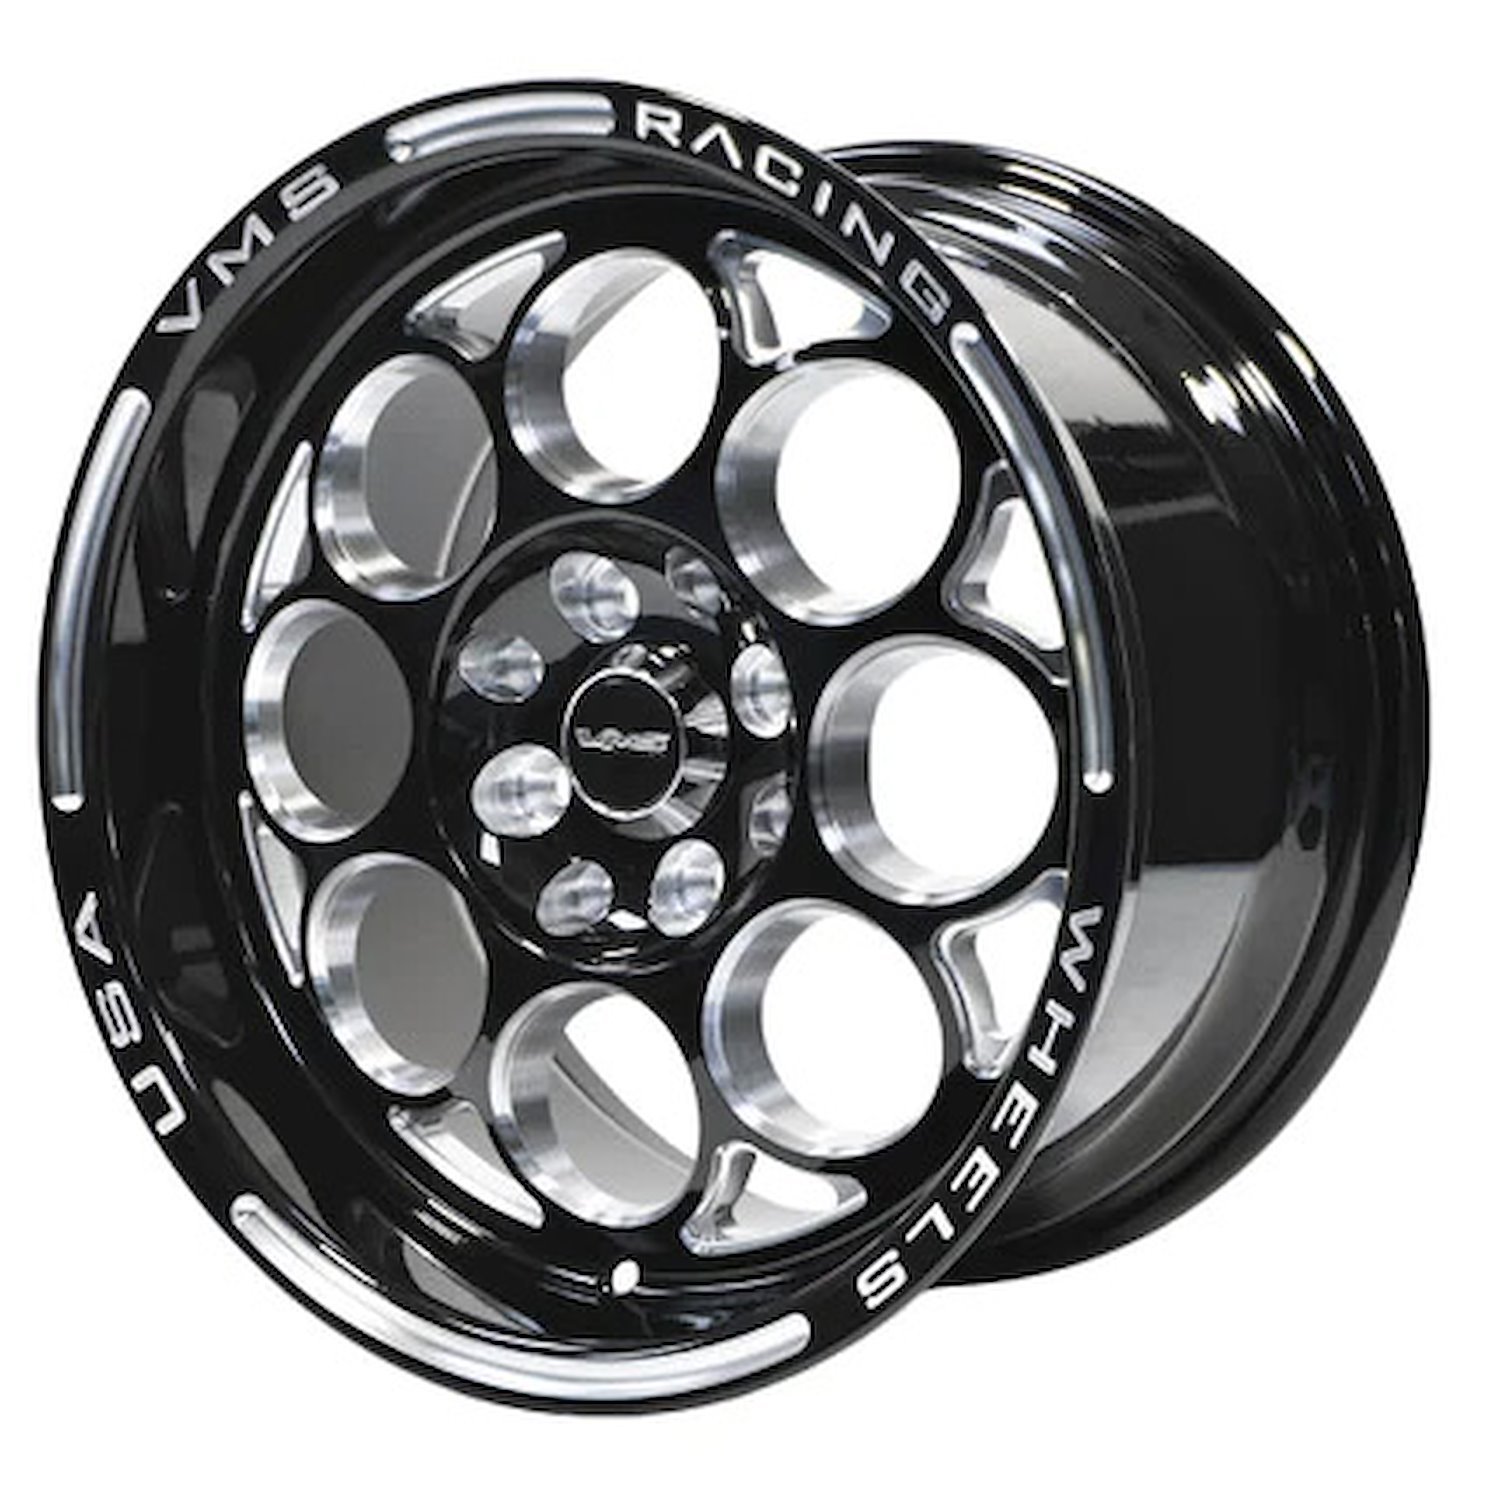 VWMO016 Modulo Wheel, Size: 15" x 10", Bolt Pattern: 5 x 4 3/4" (120.65 mm) [Finish: Gloss Black Milled]